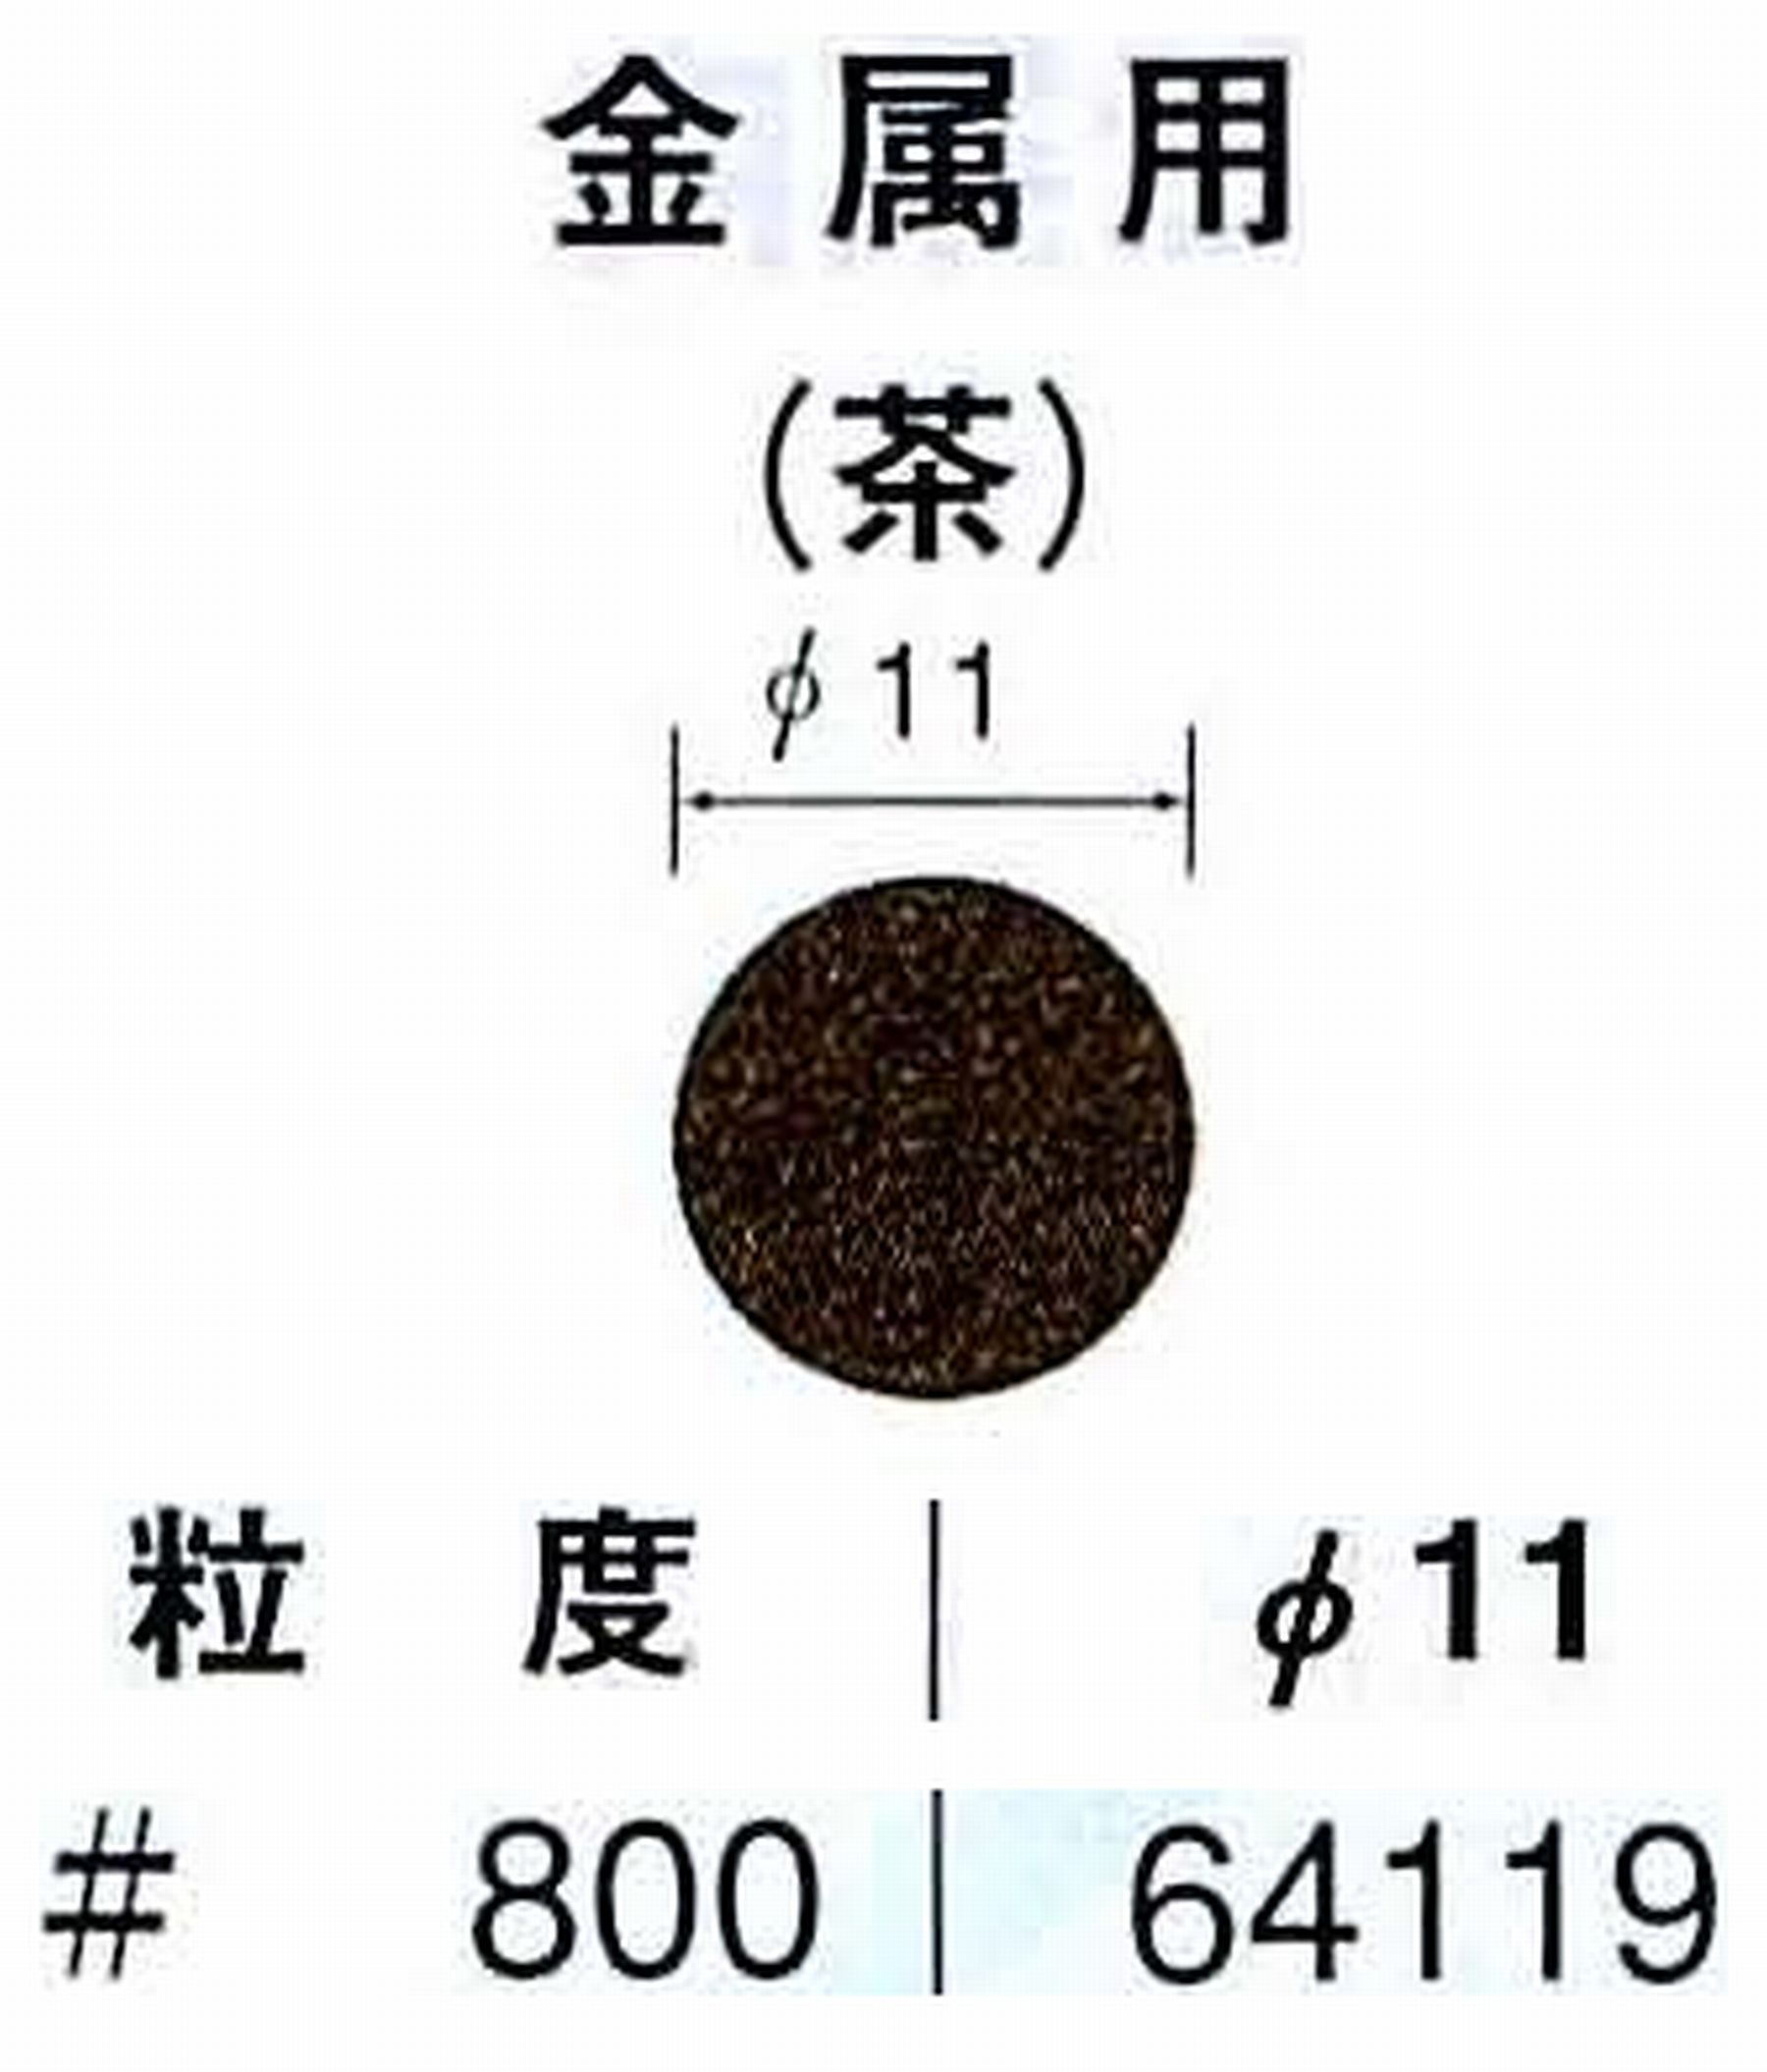 ナカニシ/NAKANISHI アングルグラインダ(電動・エアー) アングルアタッチメント専用工具 サンドペーパーディスク(布基材タイプ)裏面のり処理 64119